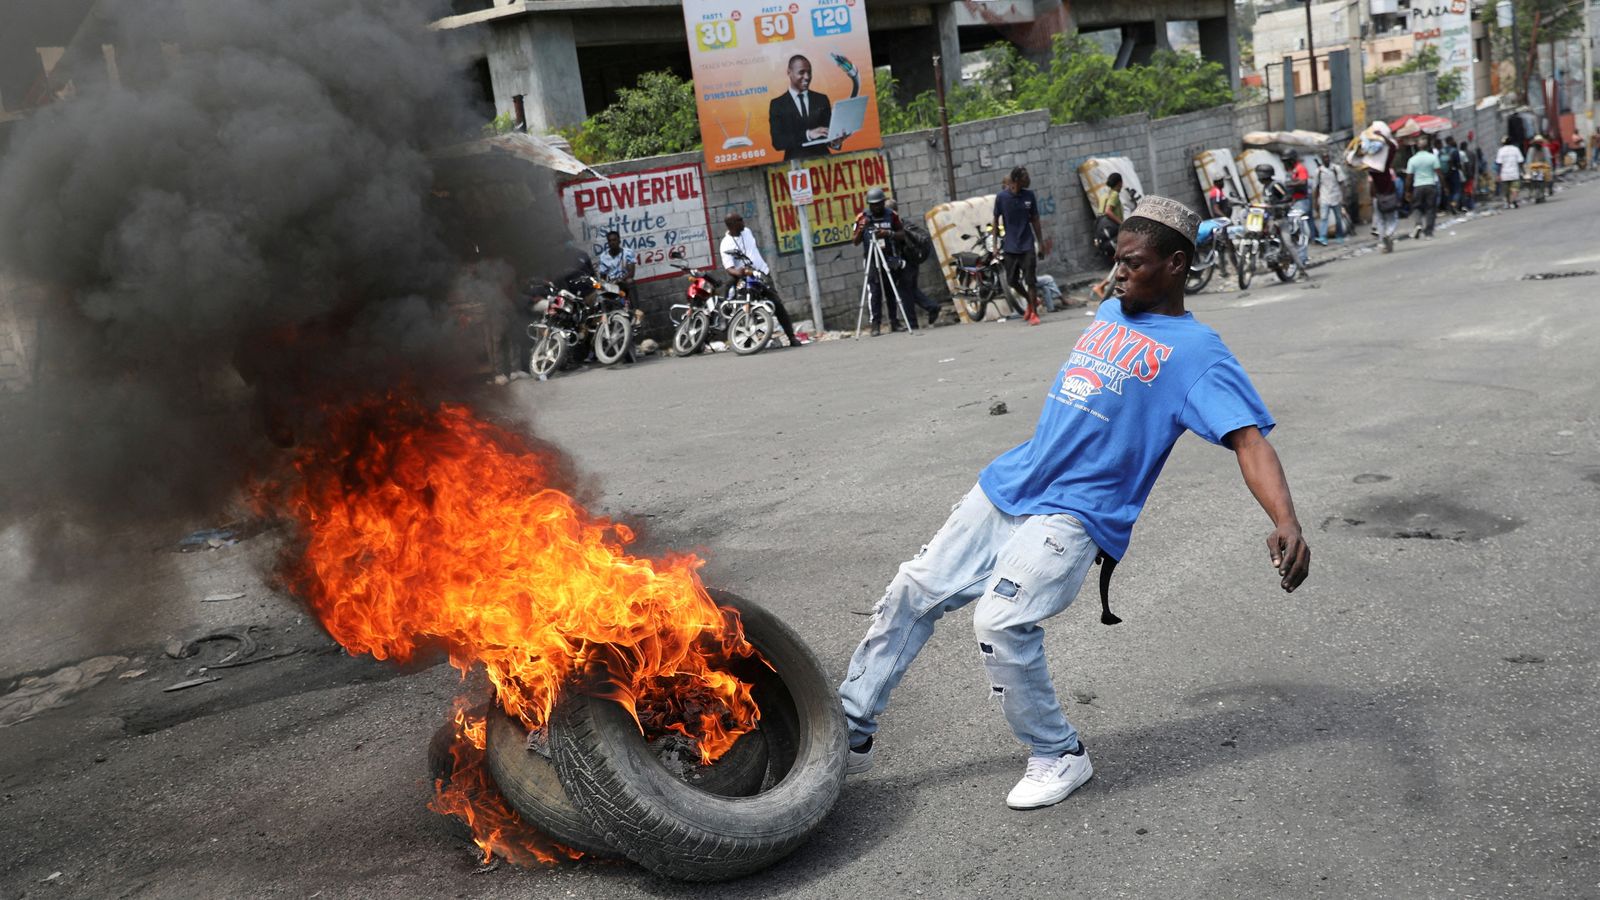 Violence des gangs en Haïti : le Royaume-Uni met en garde contre tout voyage dans un pays des Caraïbes alors que le secrétaire d’État américain tente de résoudre la crise |  Nouvelles du monde